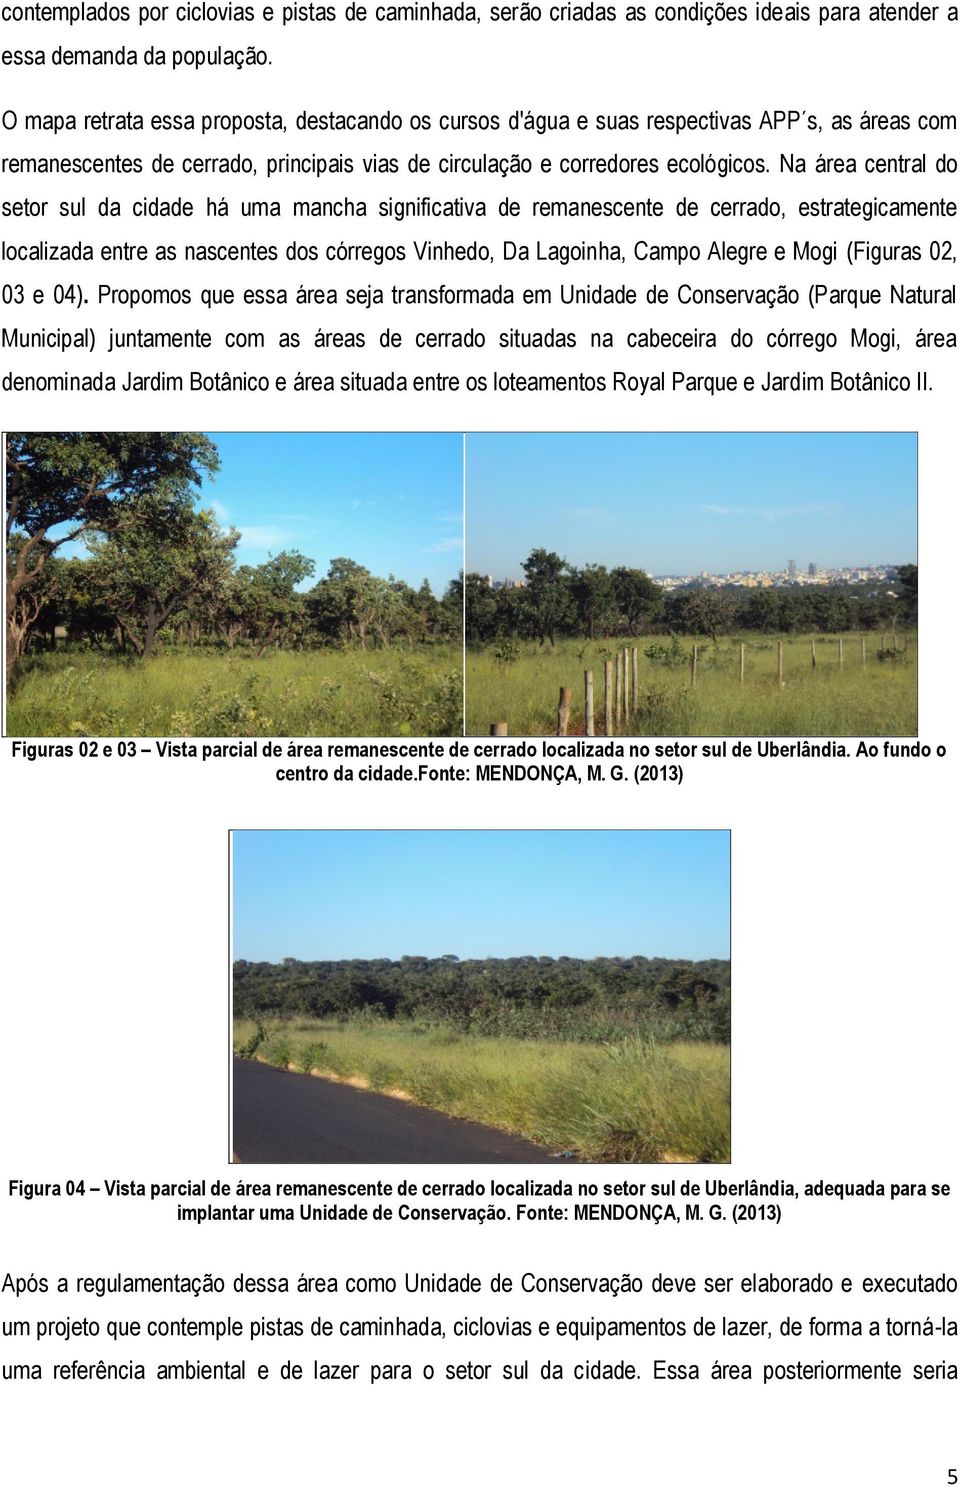 Na área central do setor sul da cidade há uma mancha significativa de remanescente de cerrado, estrategicamente localizada entre as nascentes dos córregos Vinhedo, Da Lagoinha, Campo Alegre e Mogi